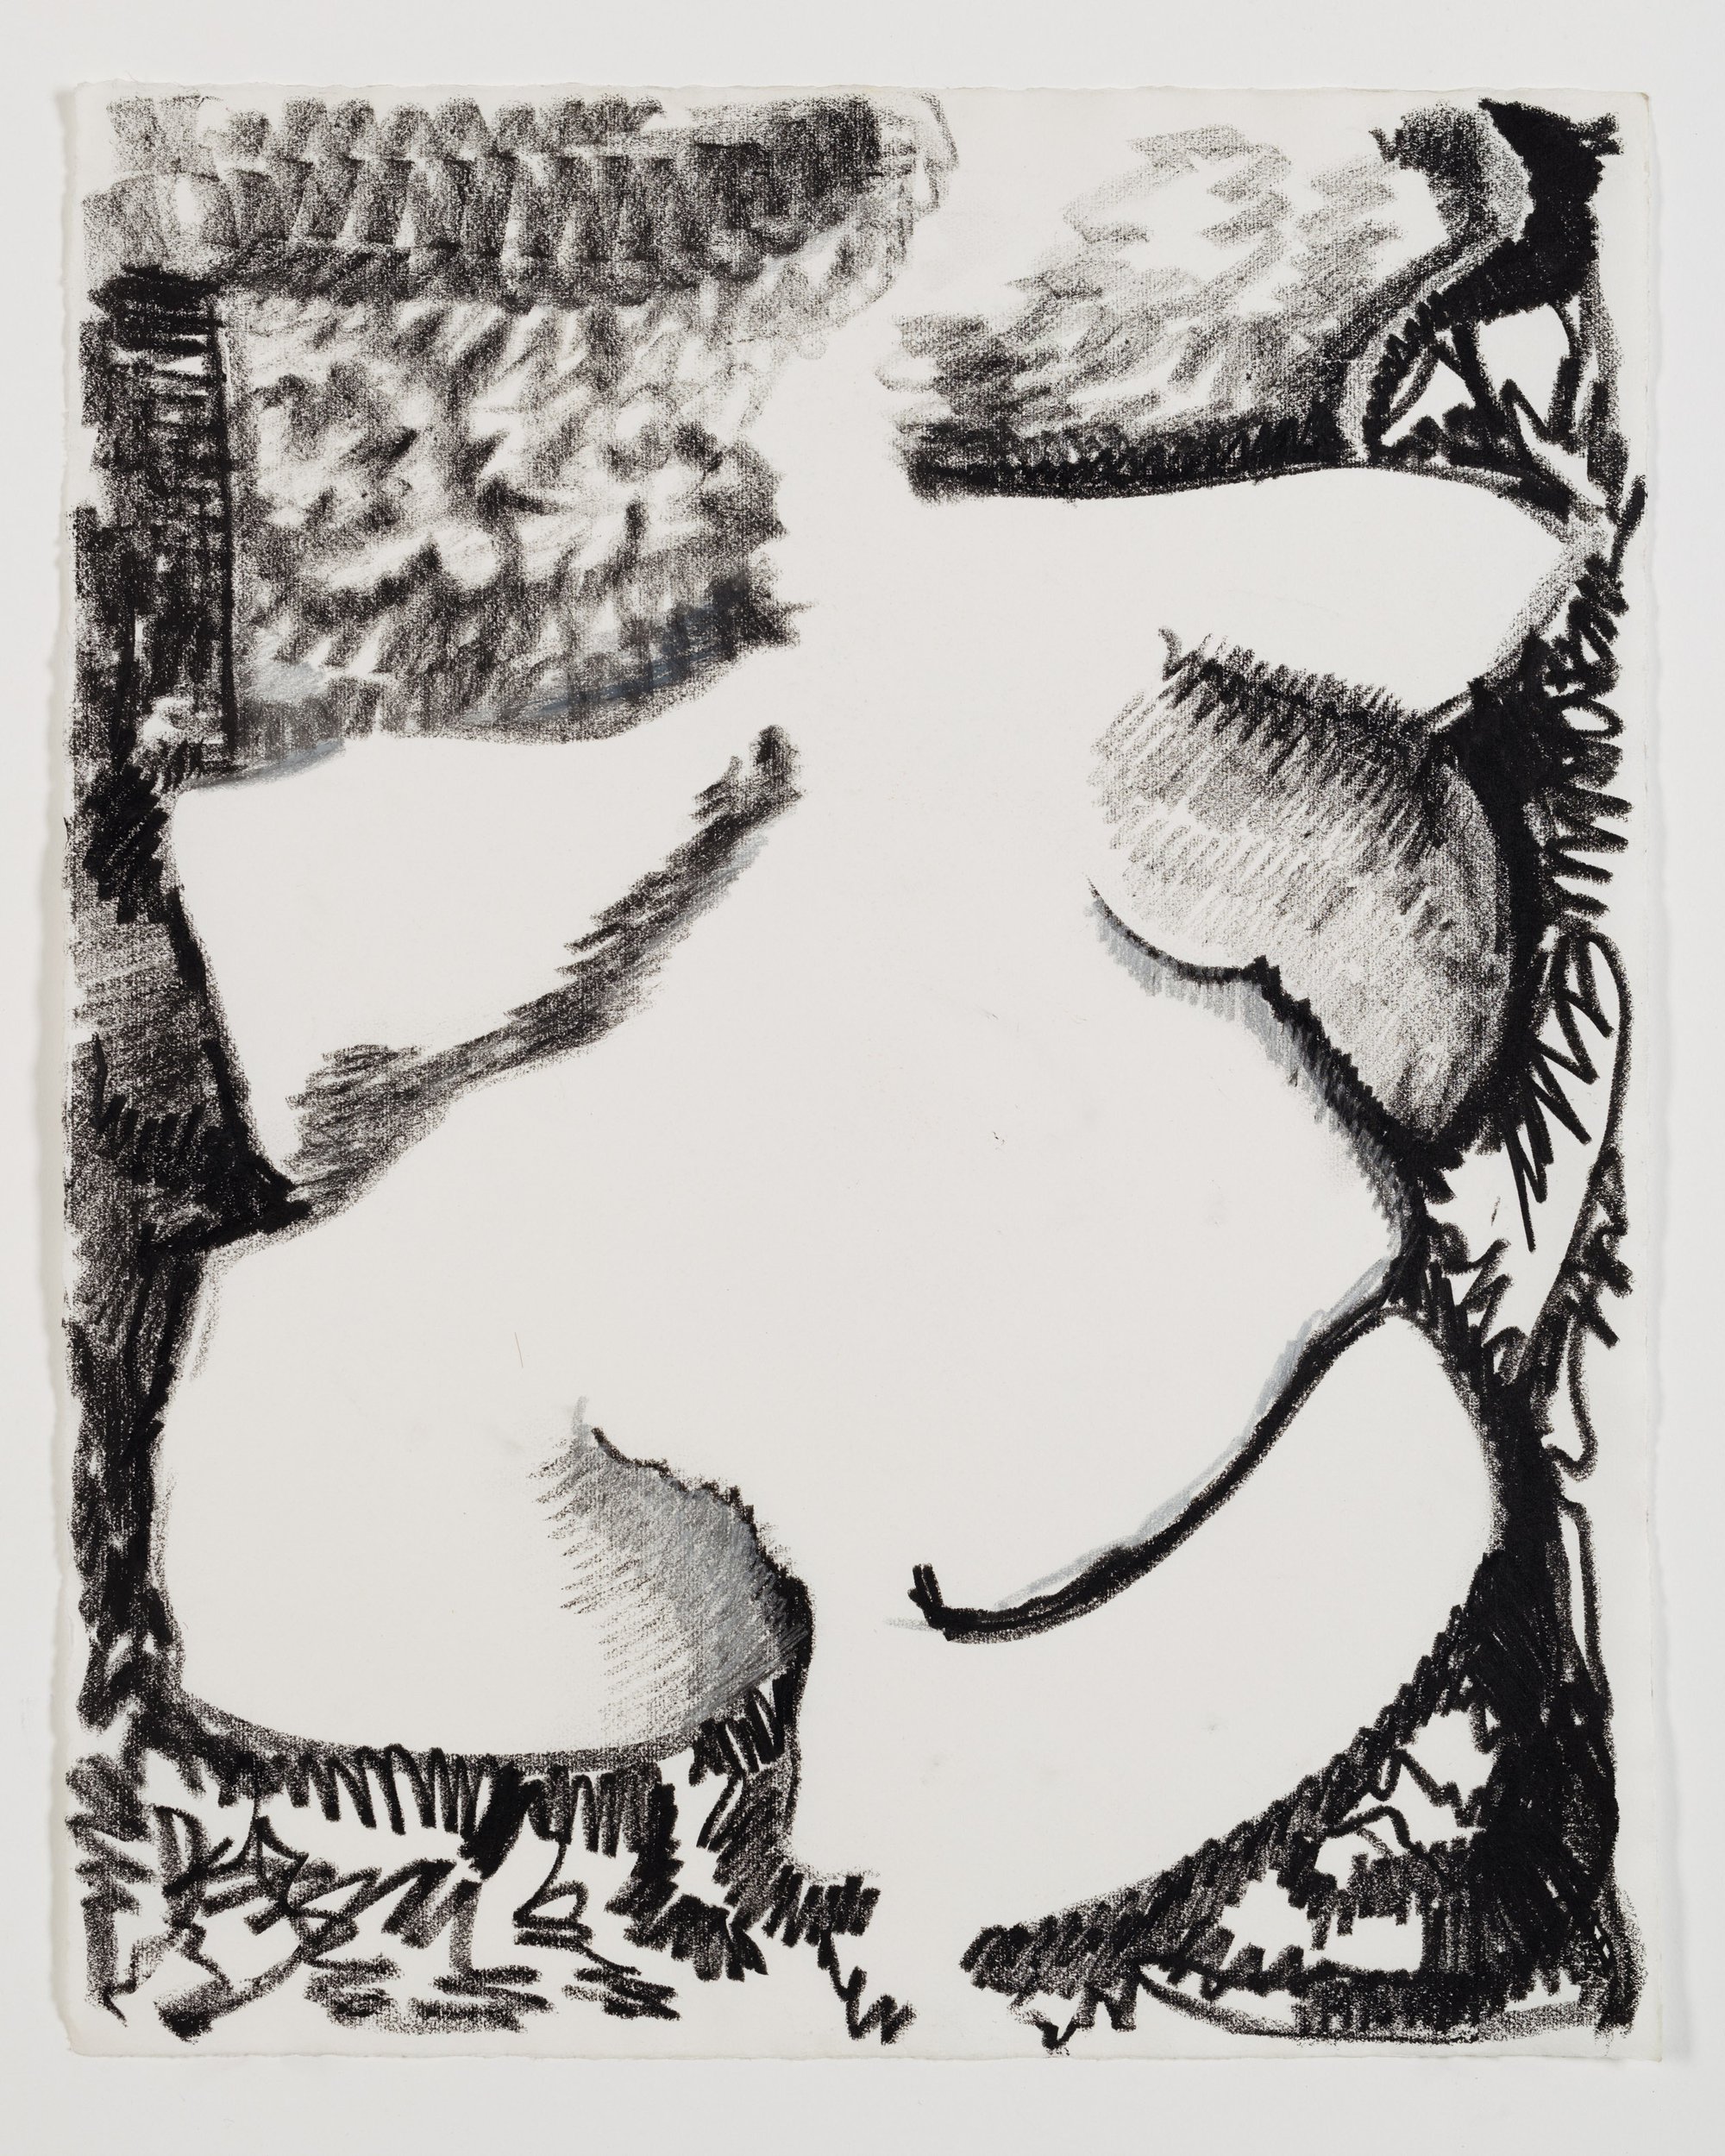 Liliane Lijn, Body, crayon on paper, 52.5 x 43 cm framed (20 5/8 x 16 7/8 in framed), 1985